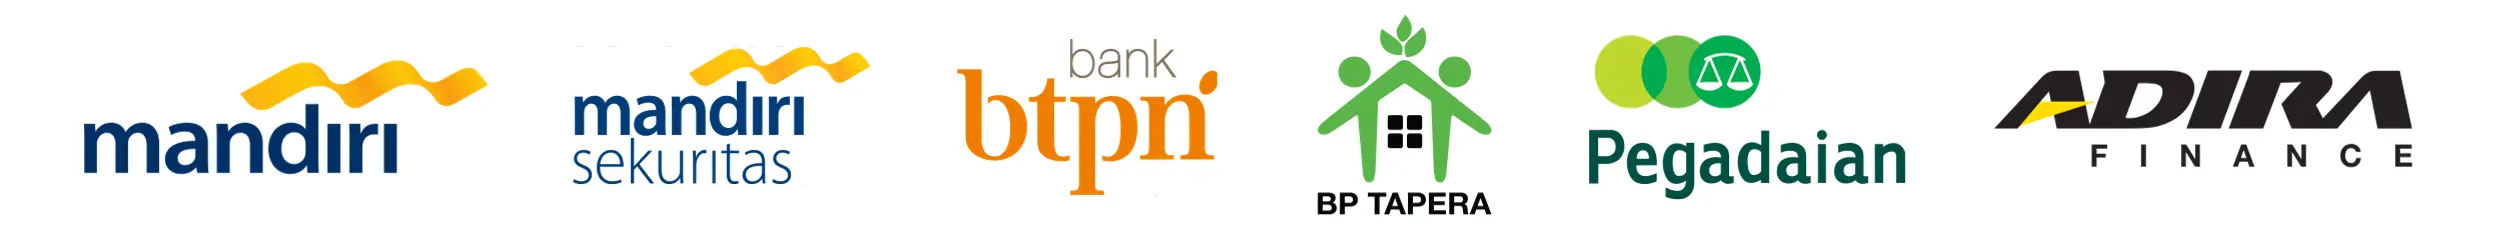 Banking Logo